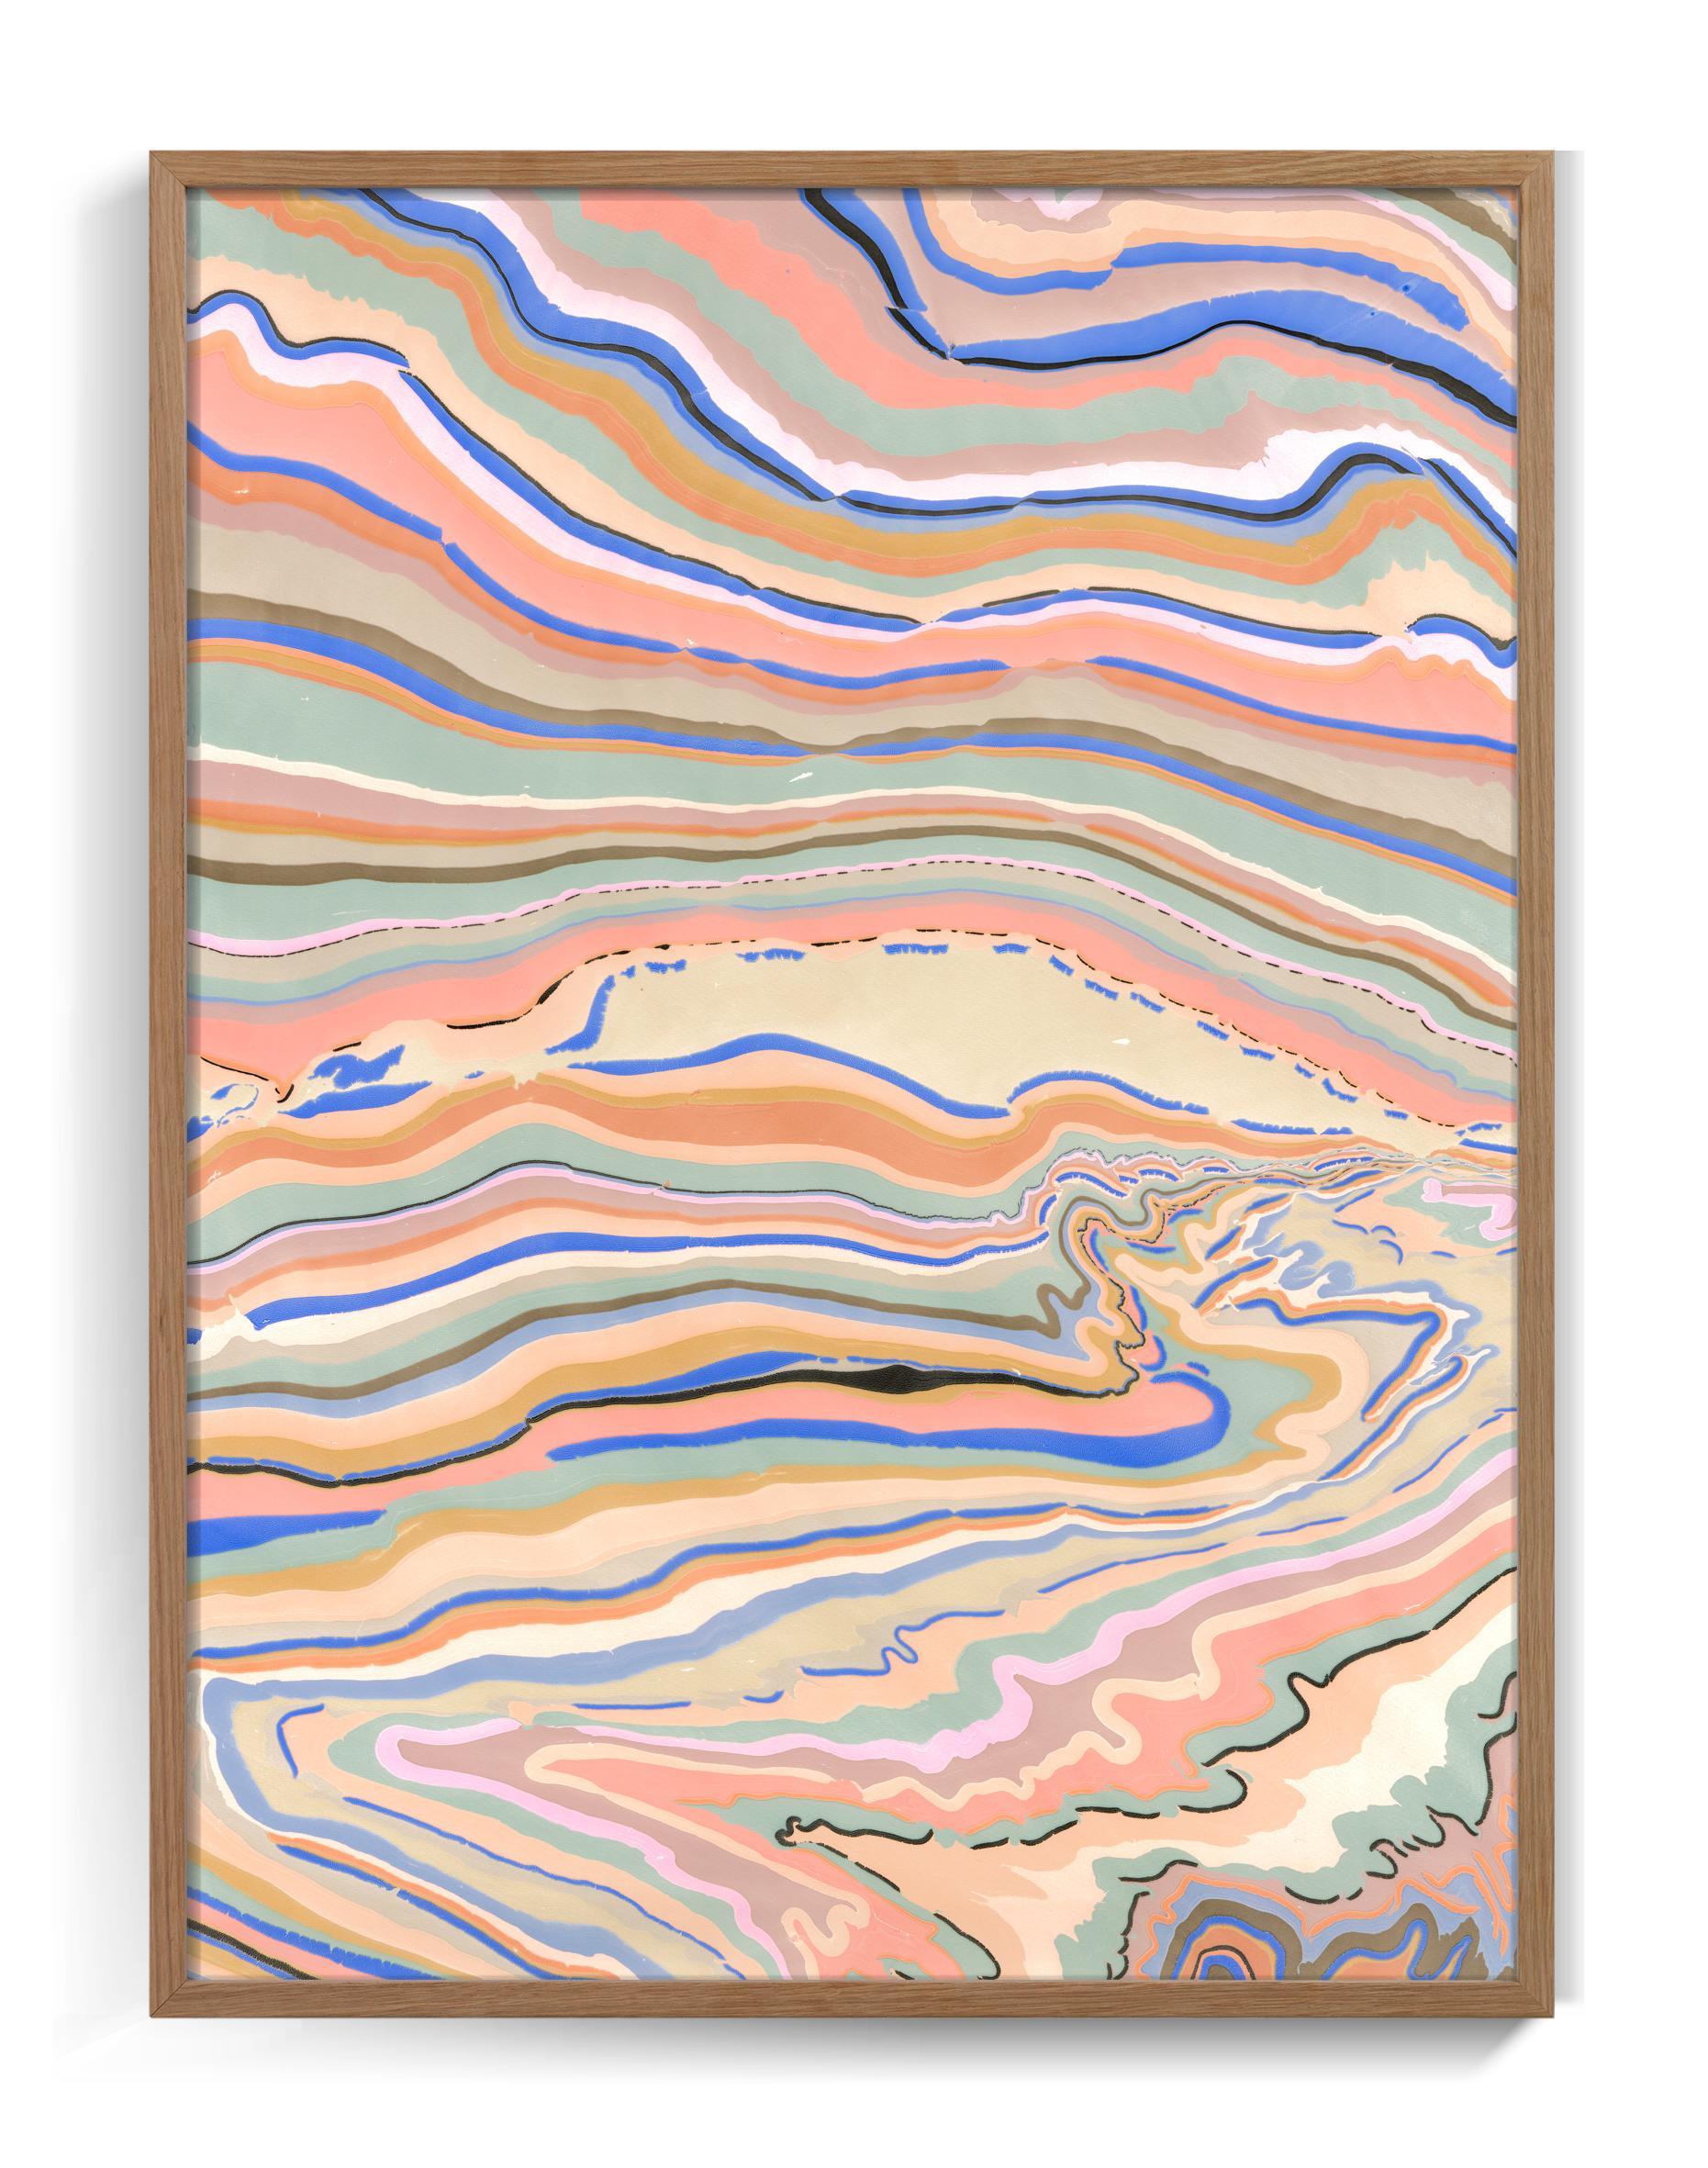 Les marbrures uniques de l'artiste danoise Pernille Snedker tissent de manière délicate des bandes de couleurs vives dans une composition complexe.
La pièce mélange harmonieusement des nuances de bleu avec de subtiles touches de noir, de sable, de